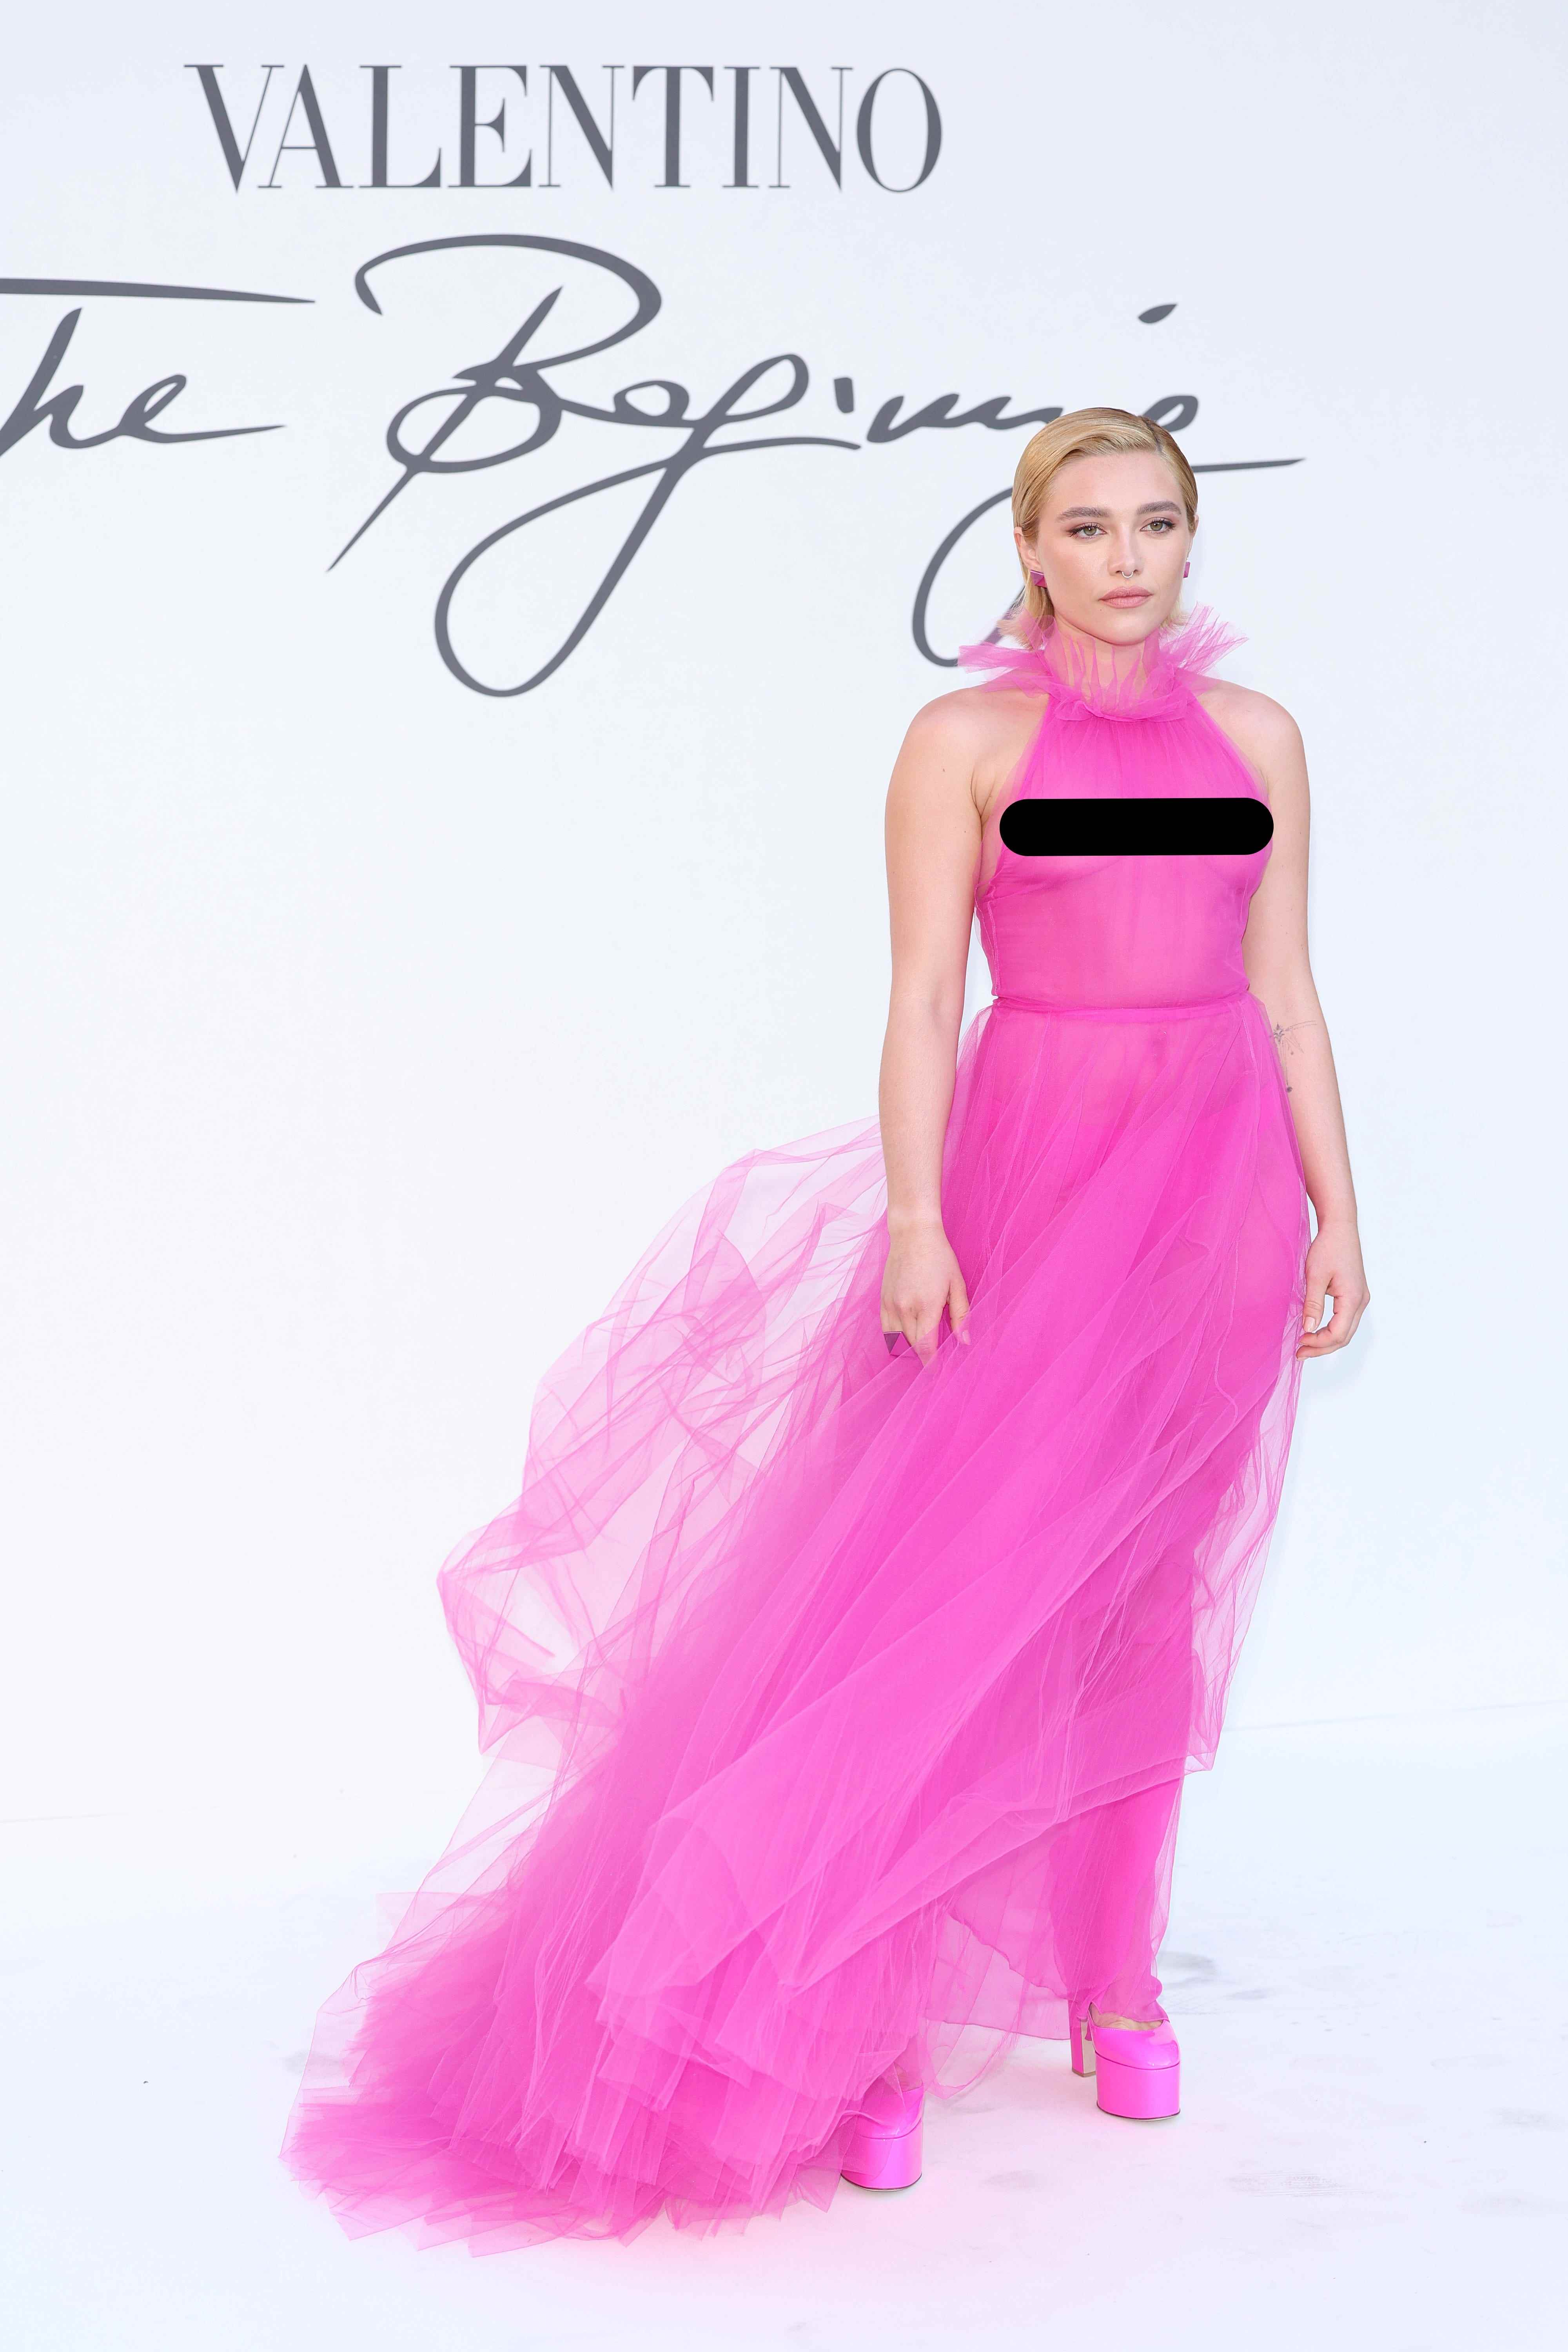 Florence Pugh steht in einem rosafarbenen, transparenten Kleid vor einer weißen Kulisse.